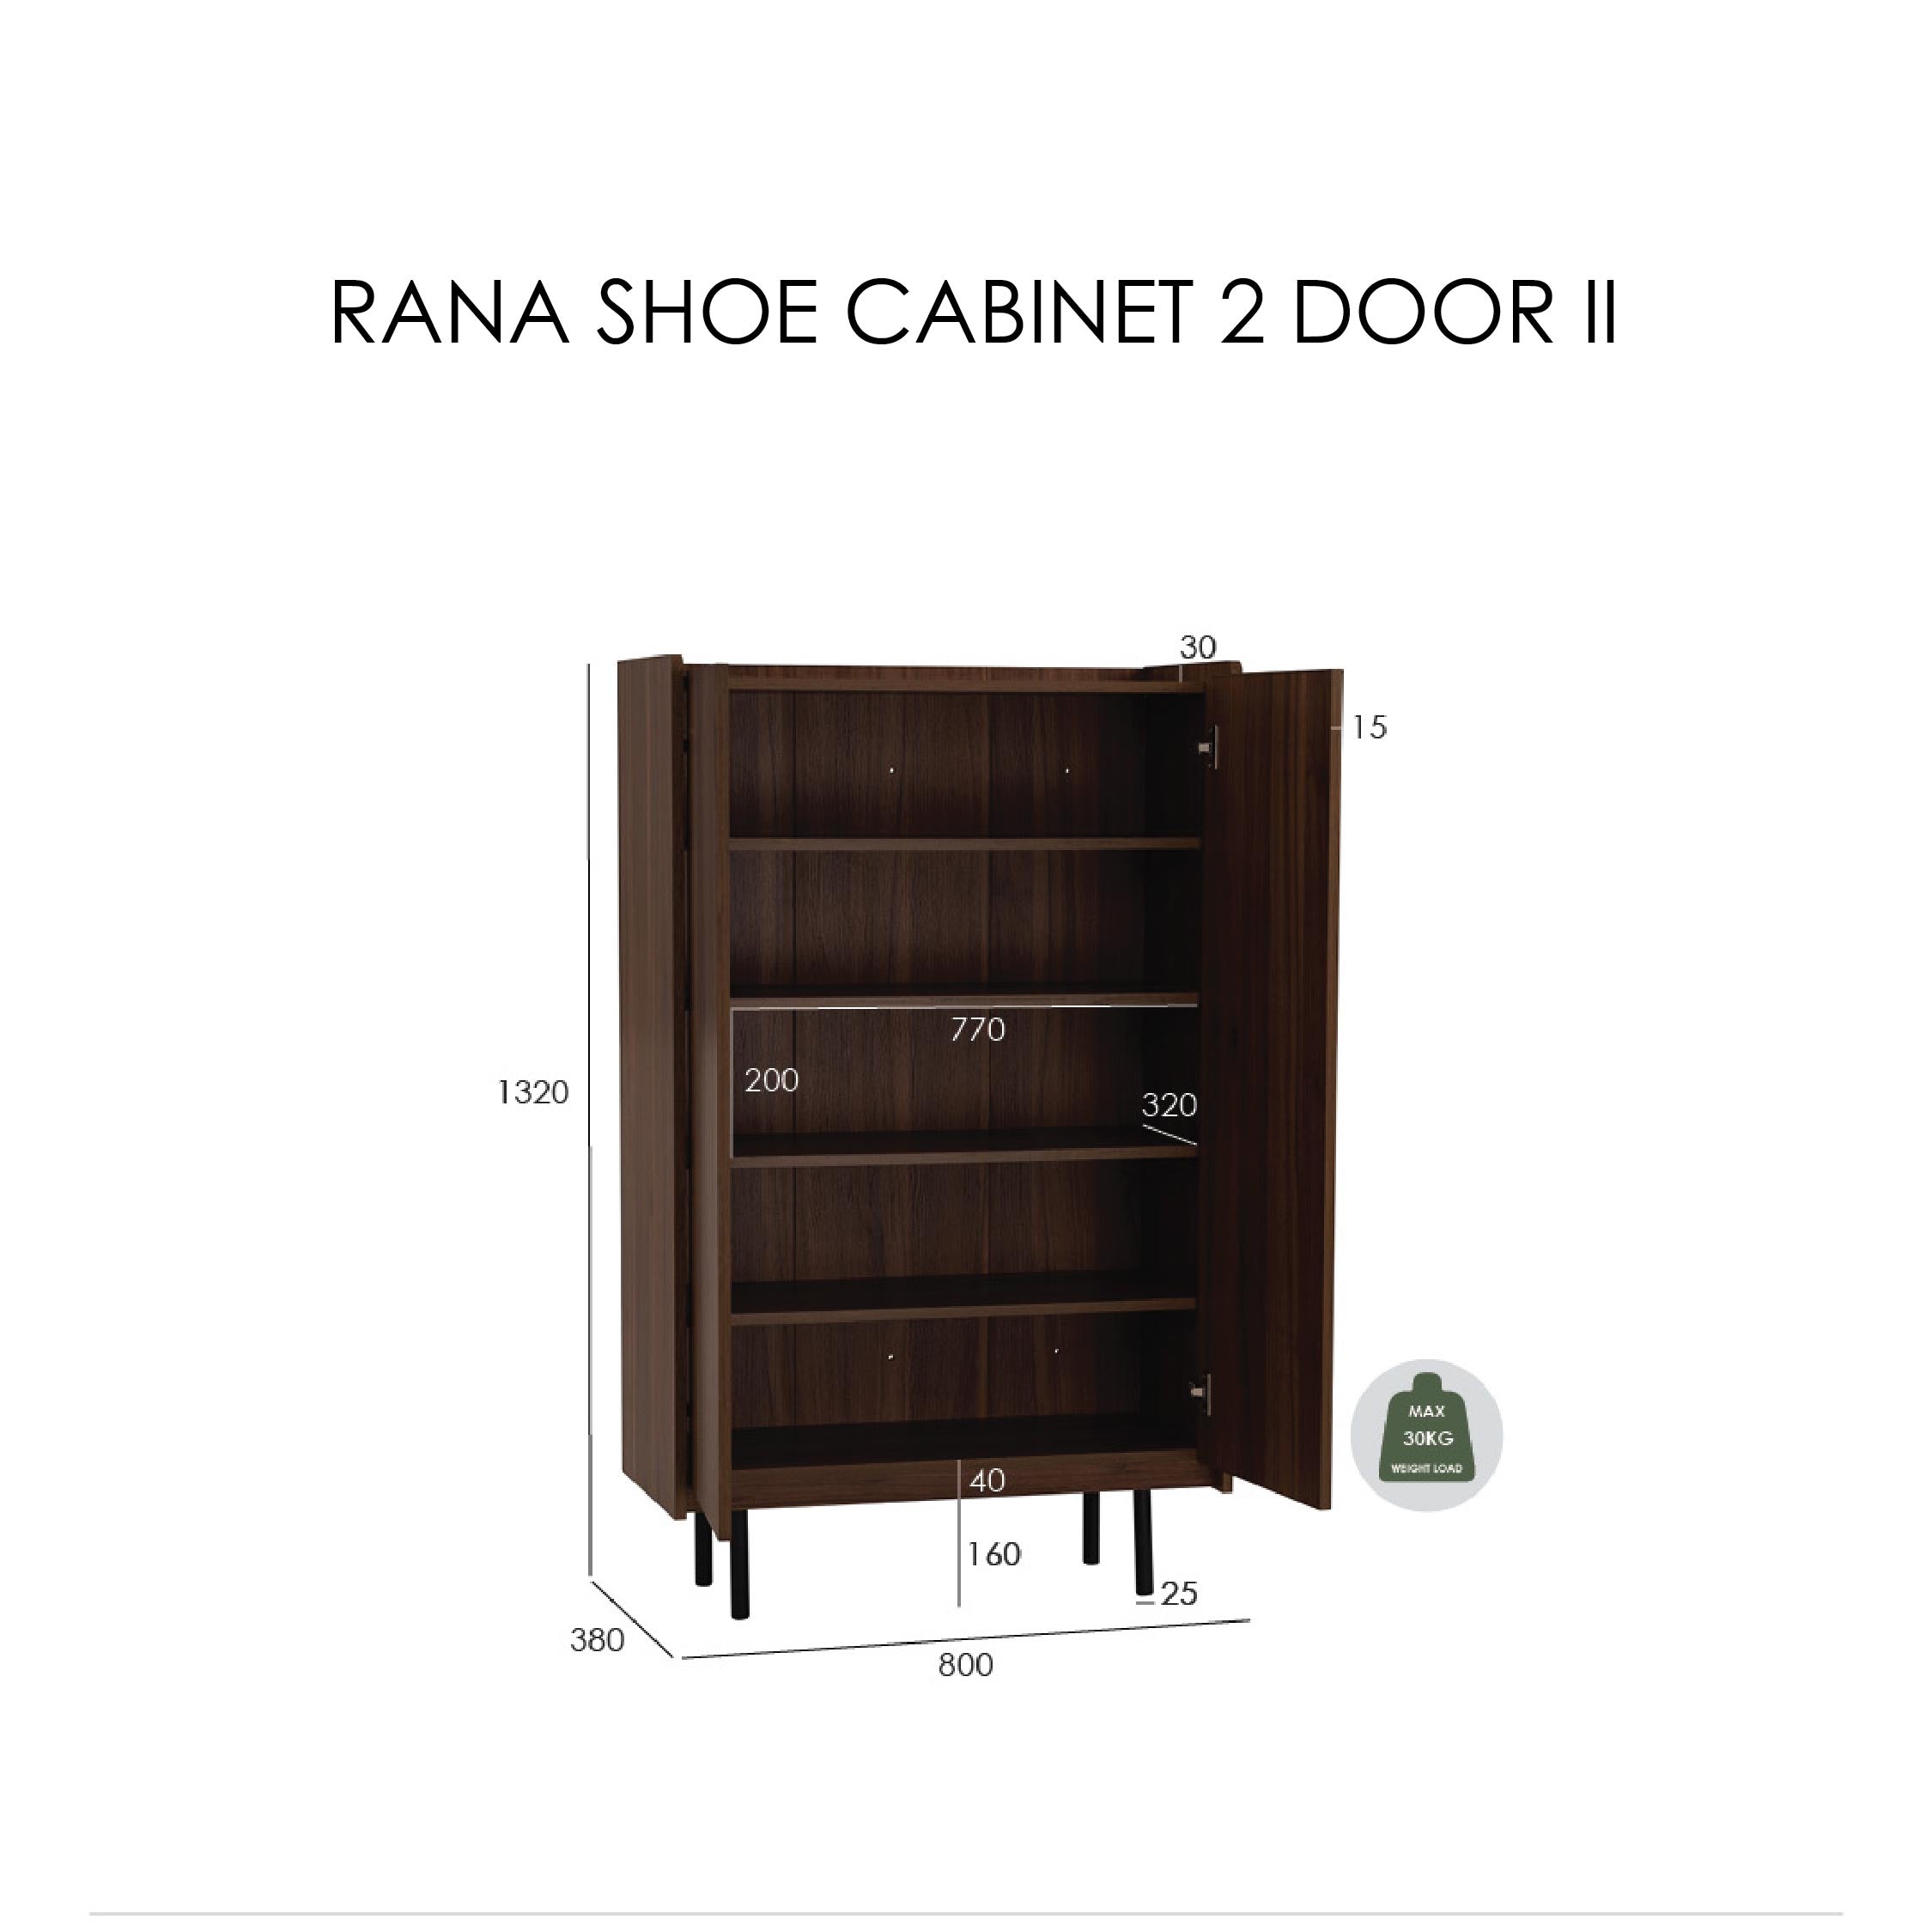 RANA Shoe Cabinet 2 Door II